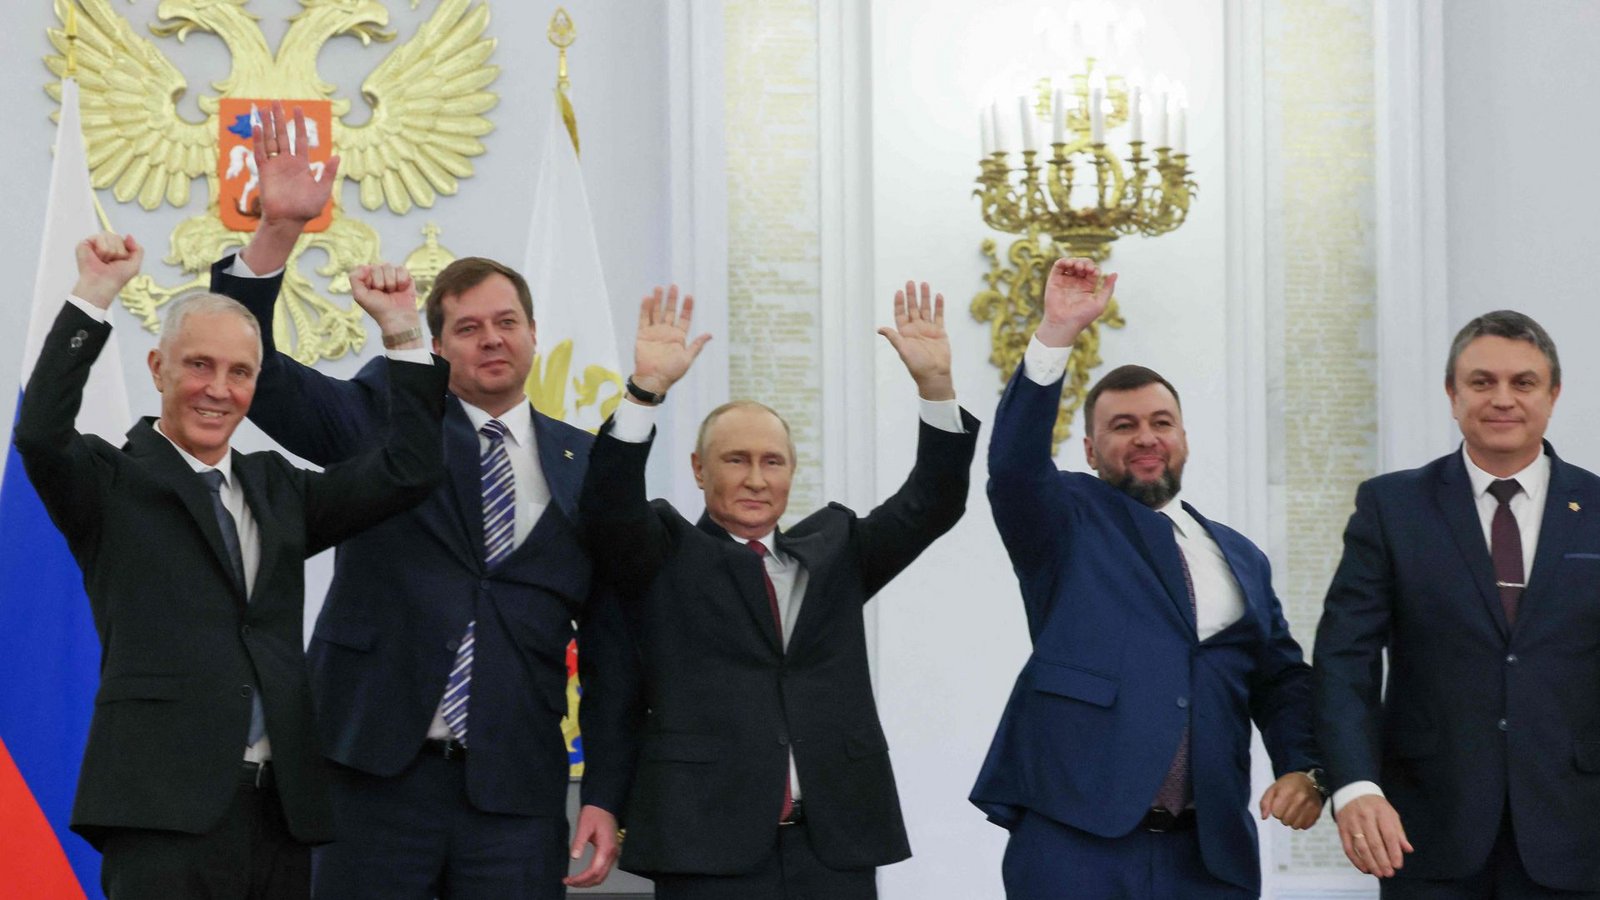 Wladimir Putin mit Vertretern aus den vier besetzten Gebieten der Ukraine, die nun russisch sein sollenFoto: AFP/Mikhail Metzel